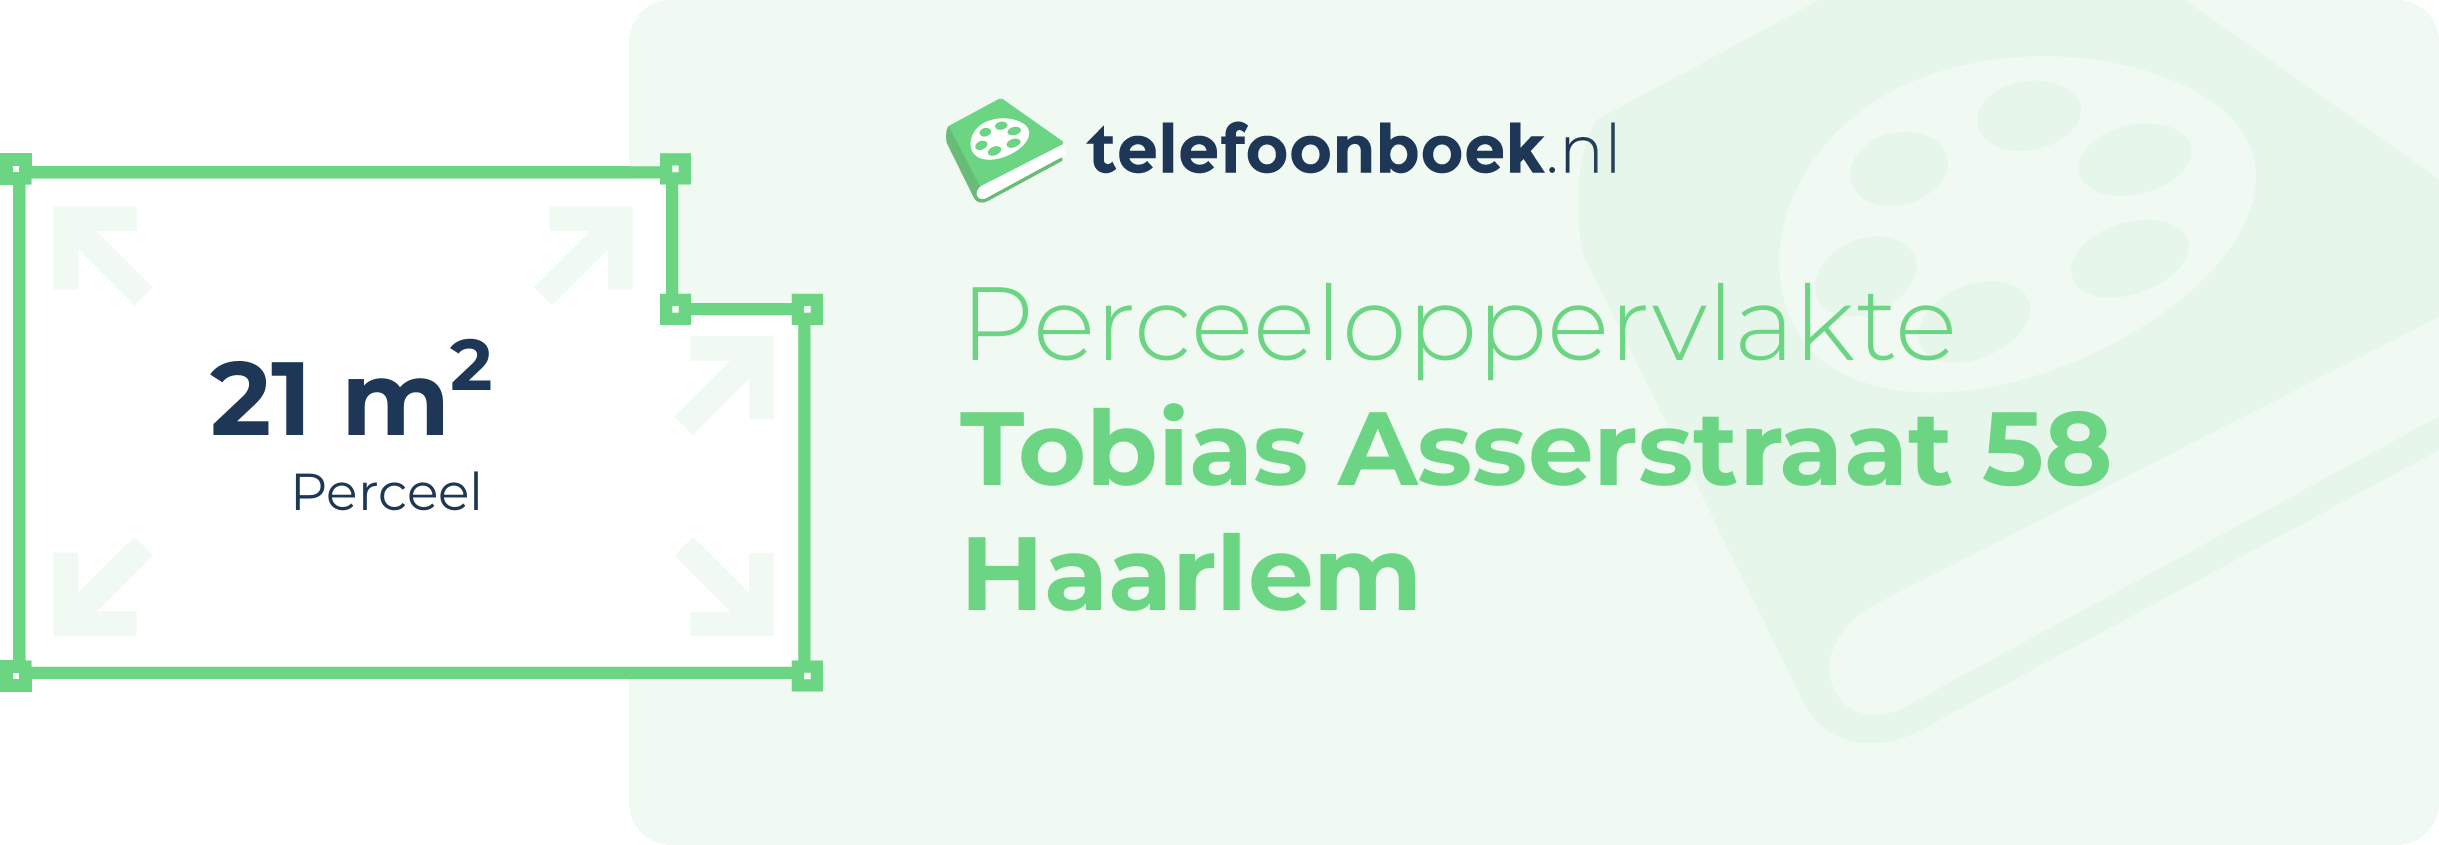 Perceeloppervlakte Tobias Asserstraat 58 Haarlem